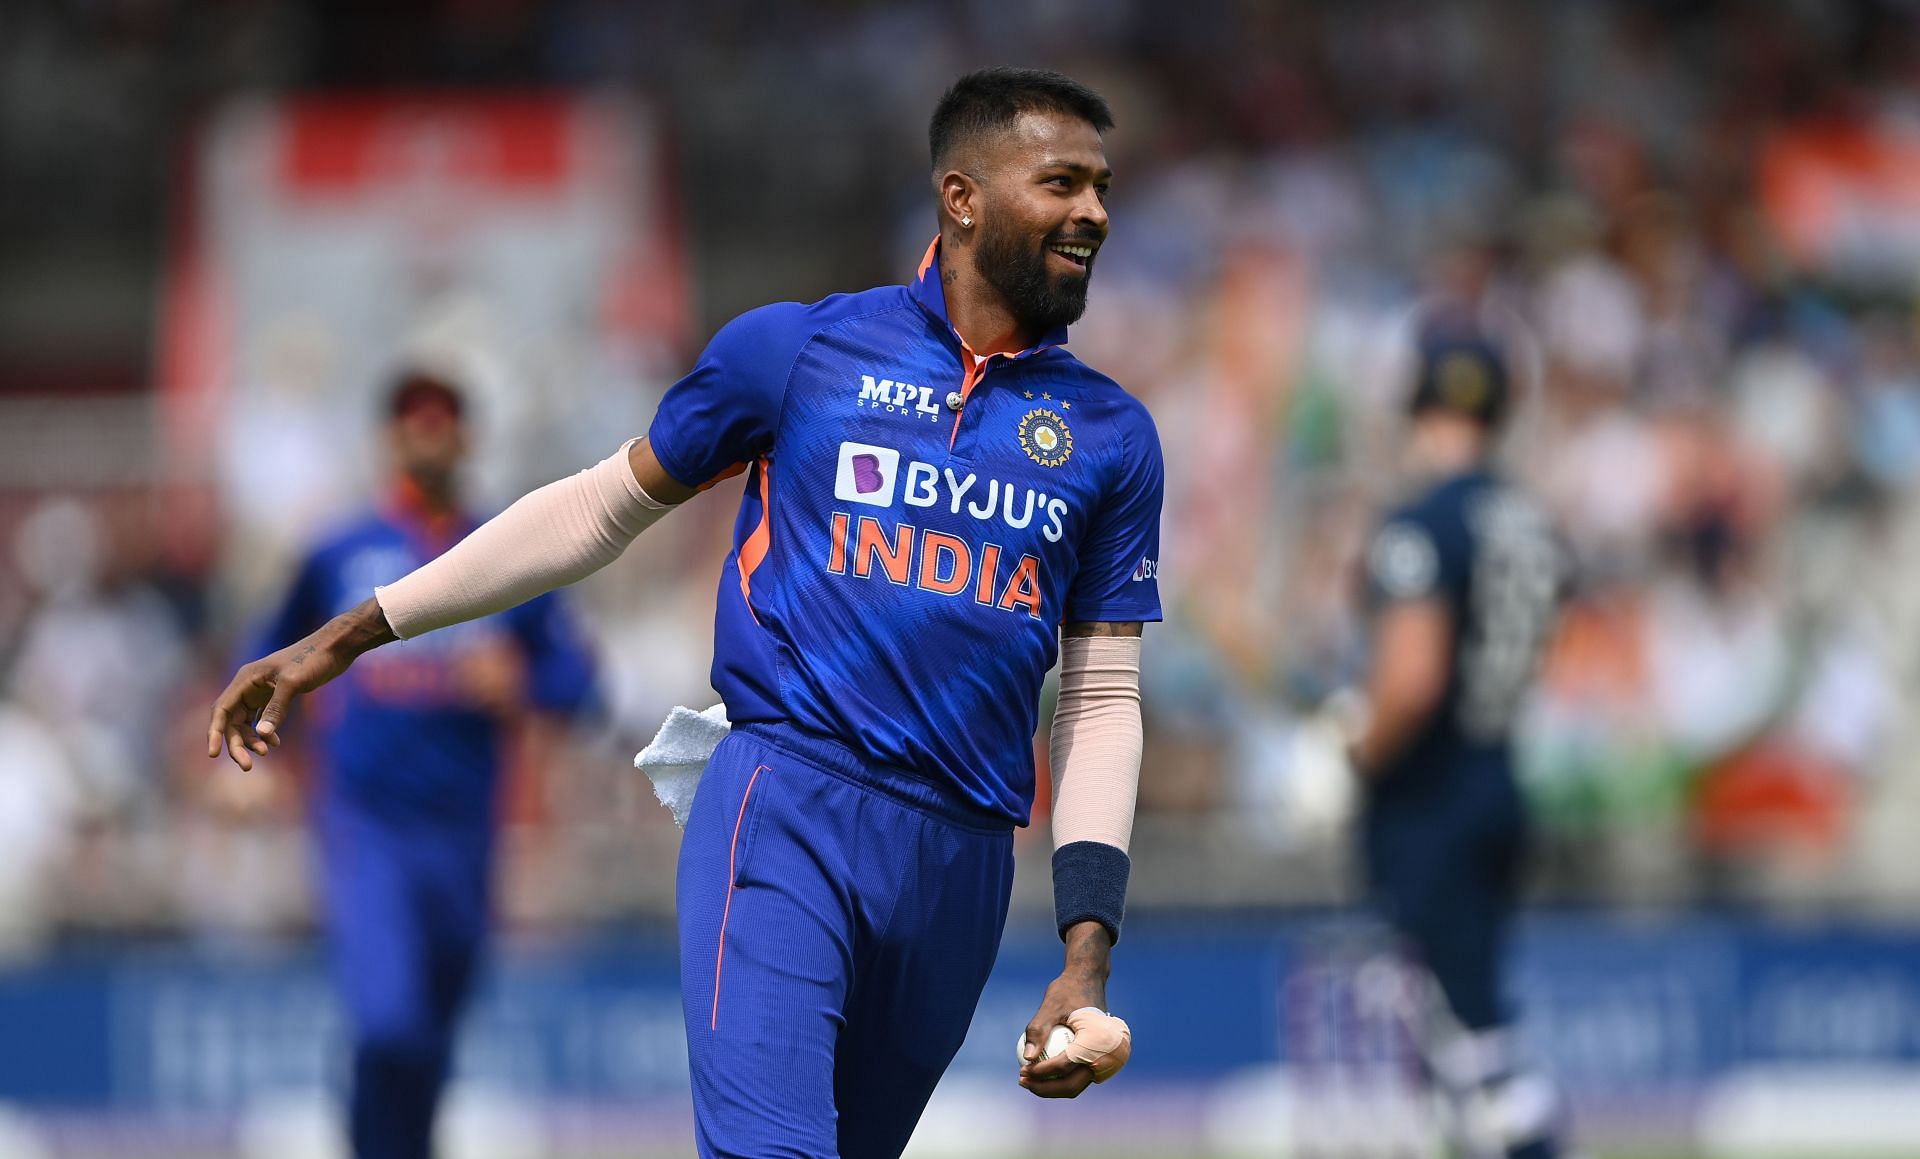 भारतीय ऑलराउंडर हार्दिक पांड्या ने इंग्&zwj;लैंड के खिलाफ तीसरे वनडे में चार विकेट लिए